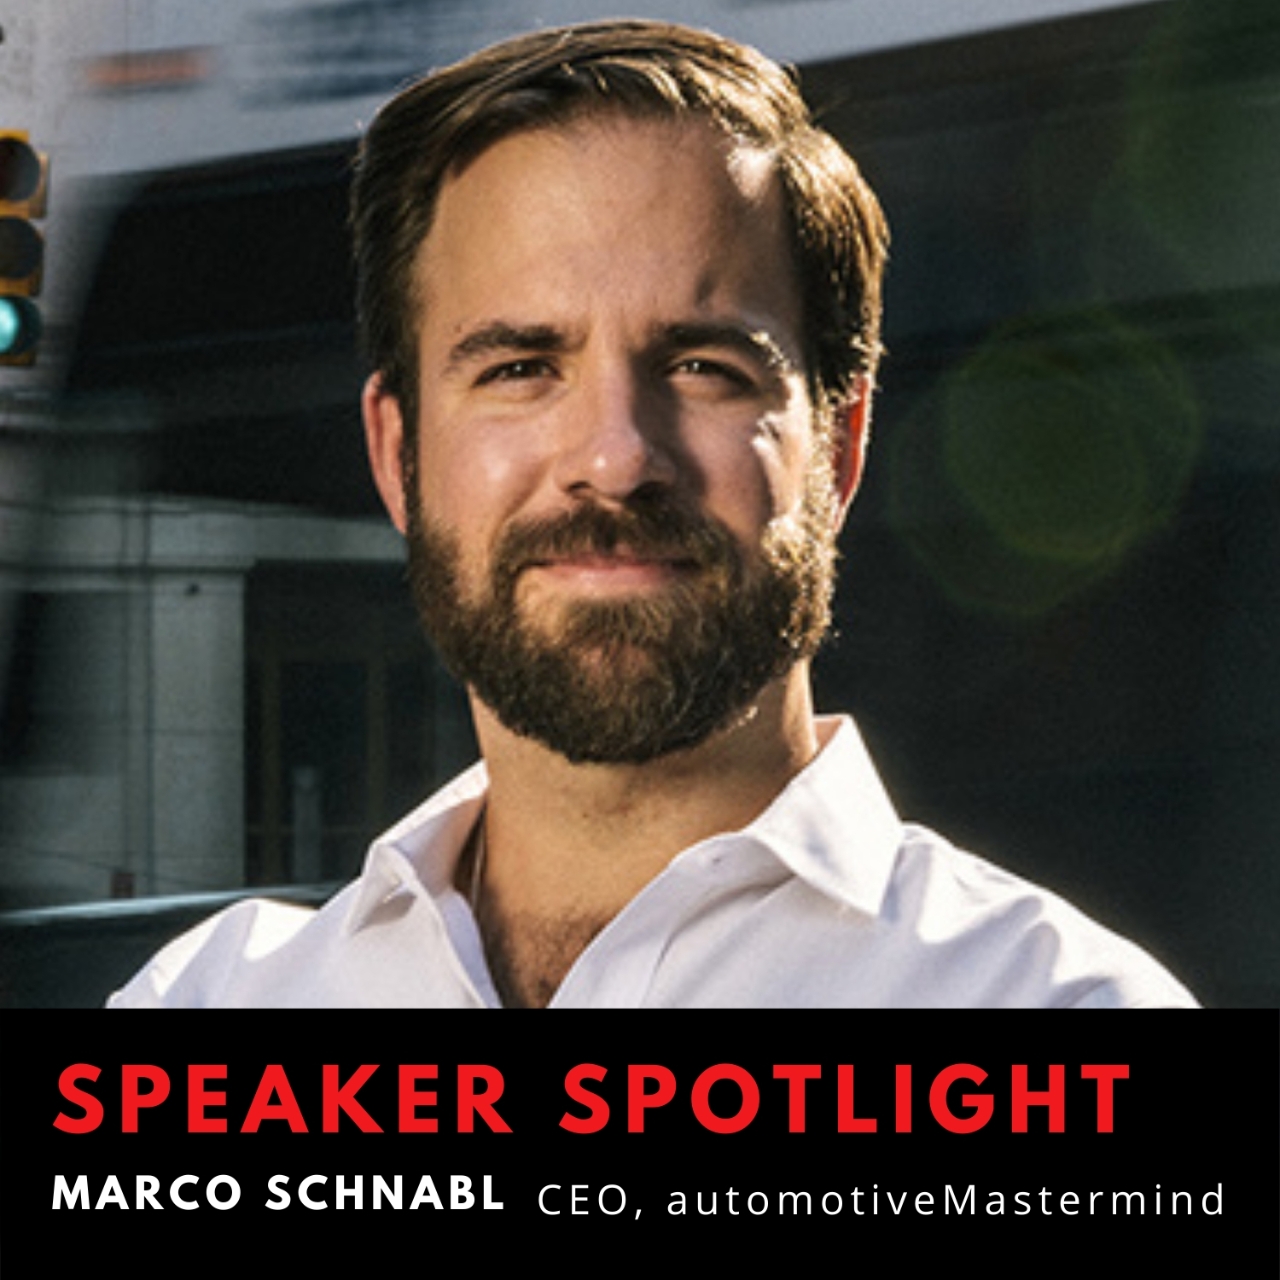 Marco Schnabl, CEO automotiveMastermind